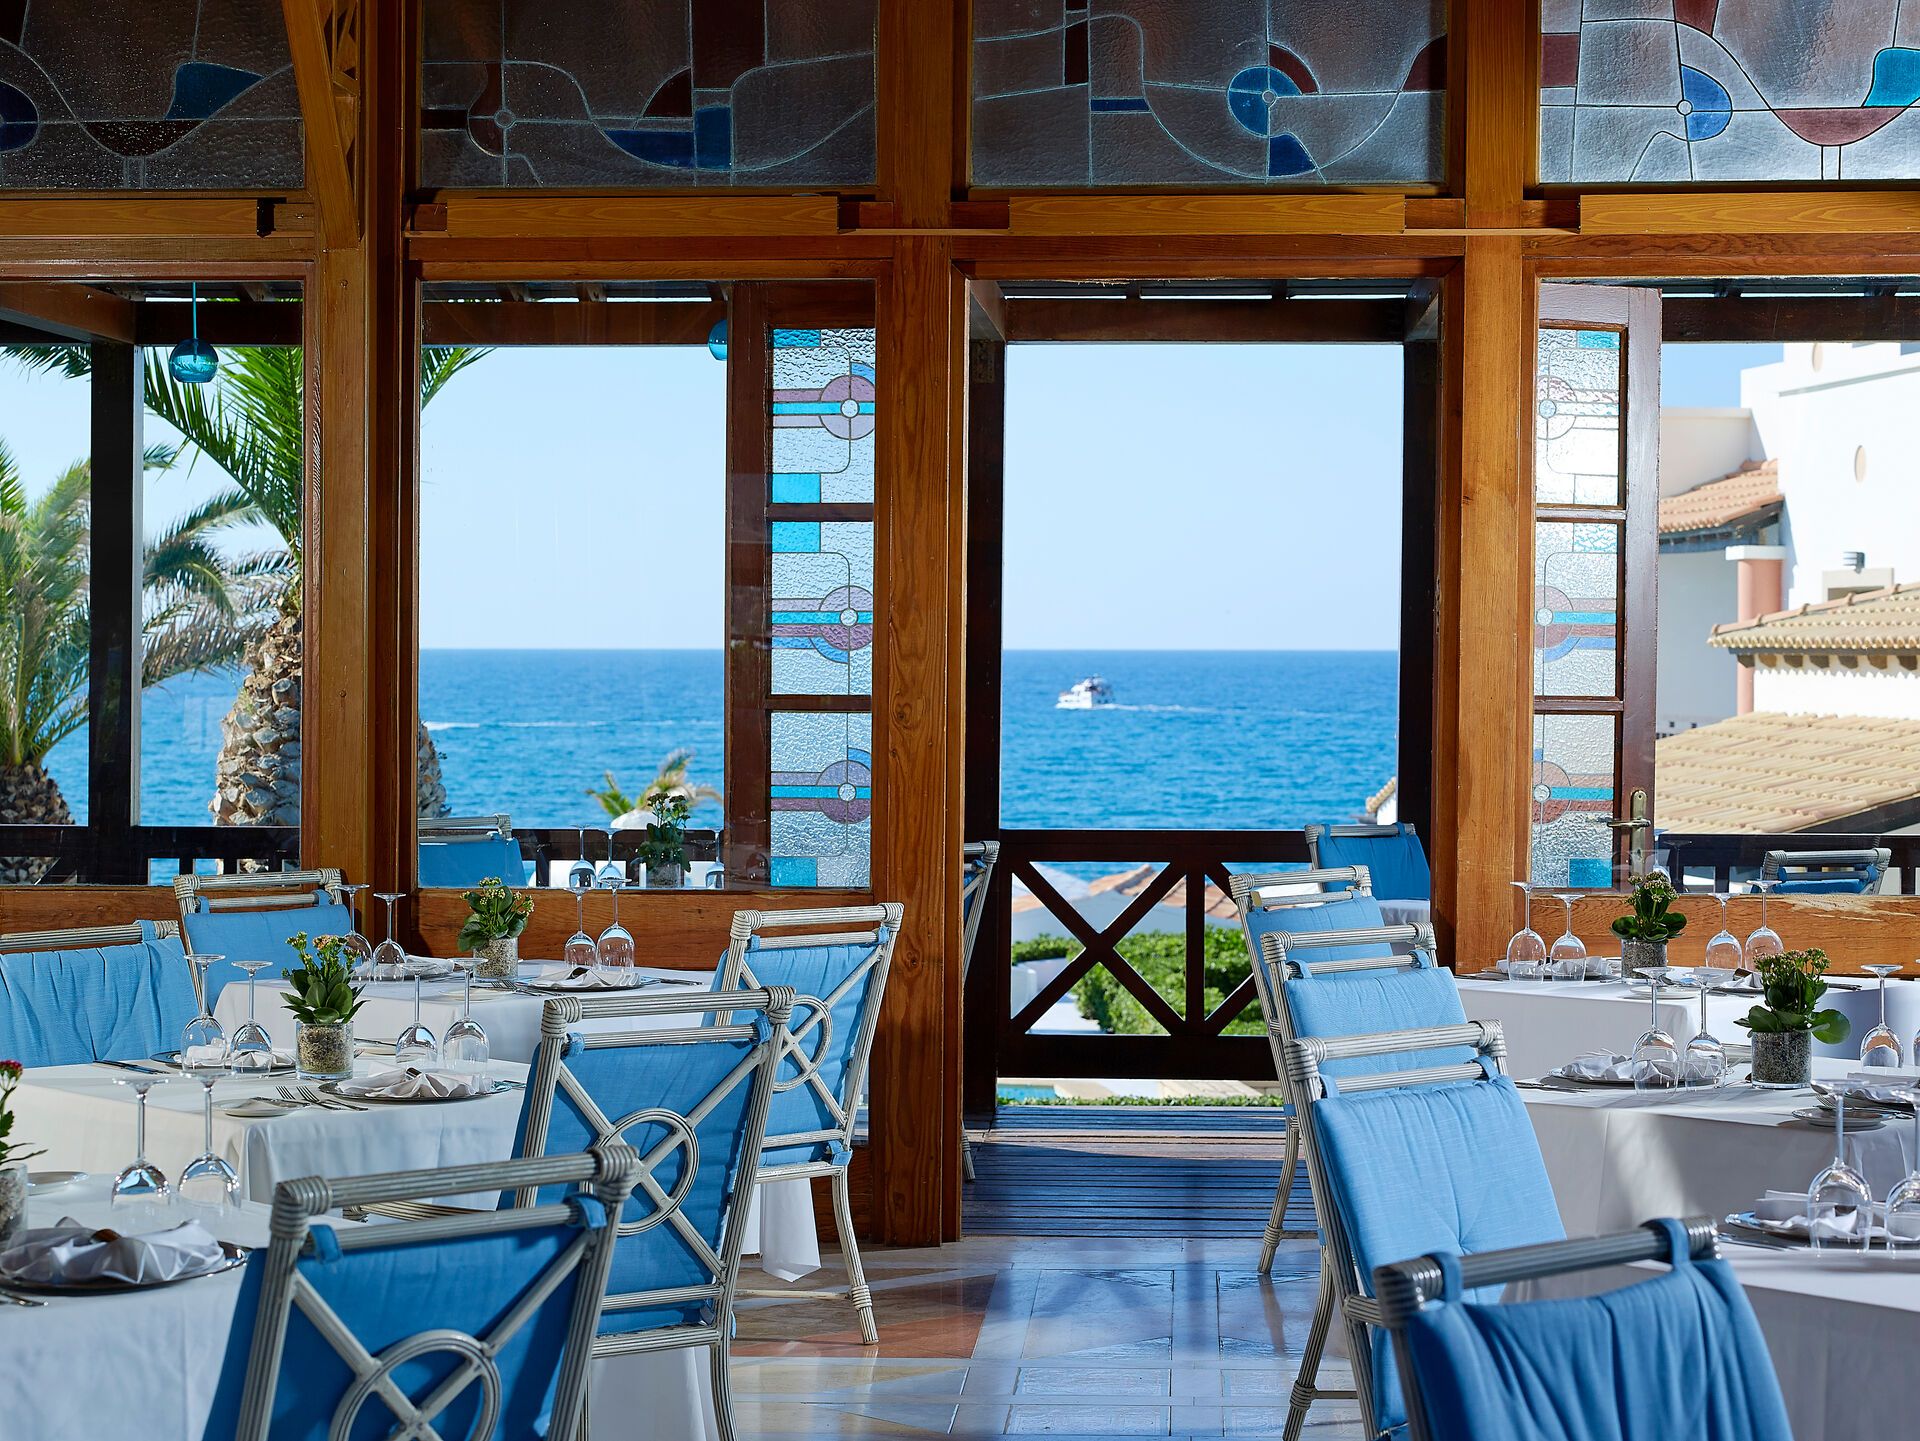 Crète - Hersonissos - Grèce - Iles grecques - Hotel Aldemar Knossos Royal 5*